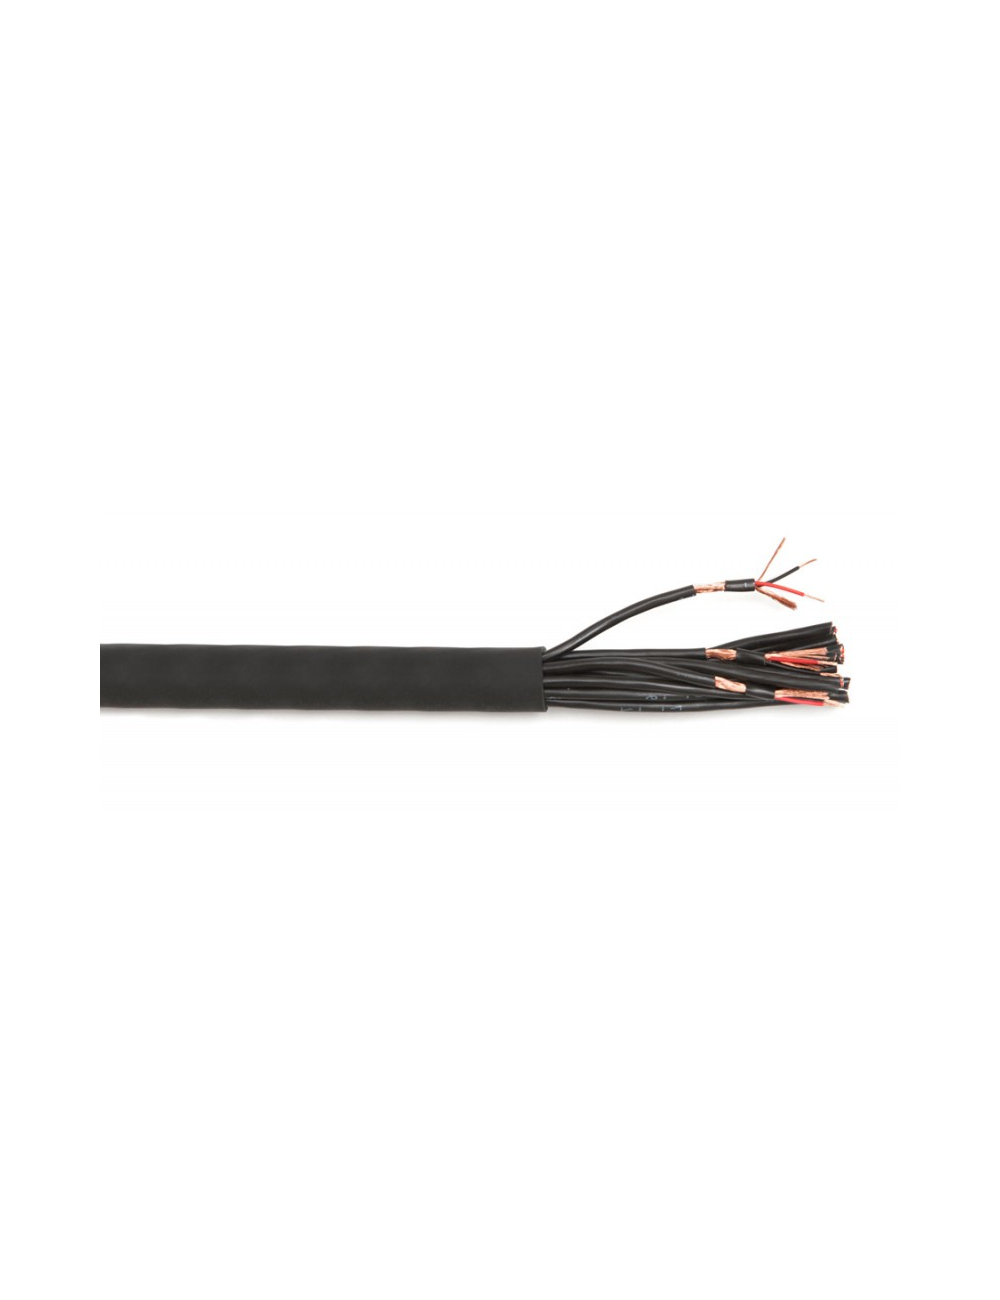 16 pair analog multi-pair cable (per meter)